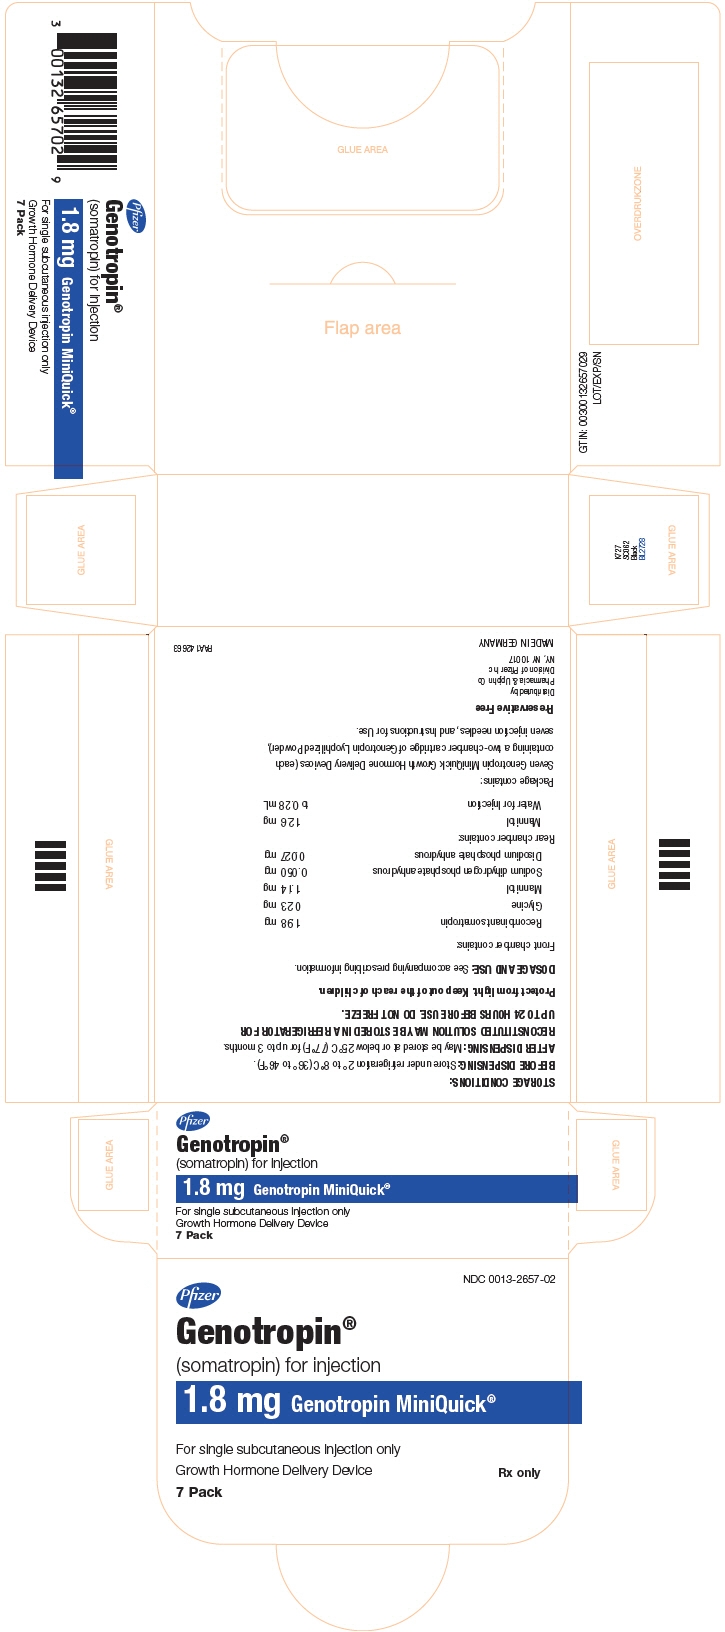 Principal Display Panel - 1.8 mg Kit Carton